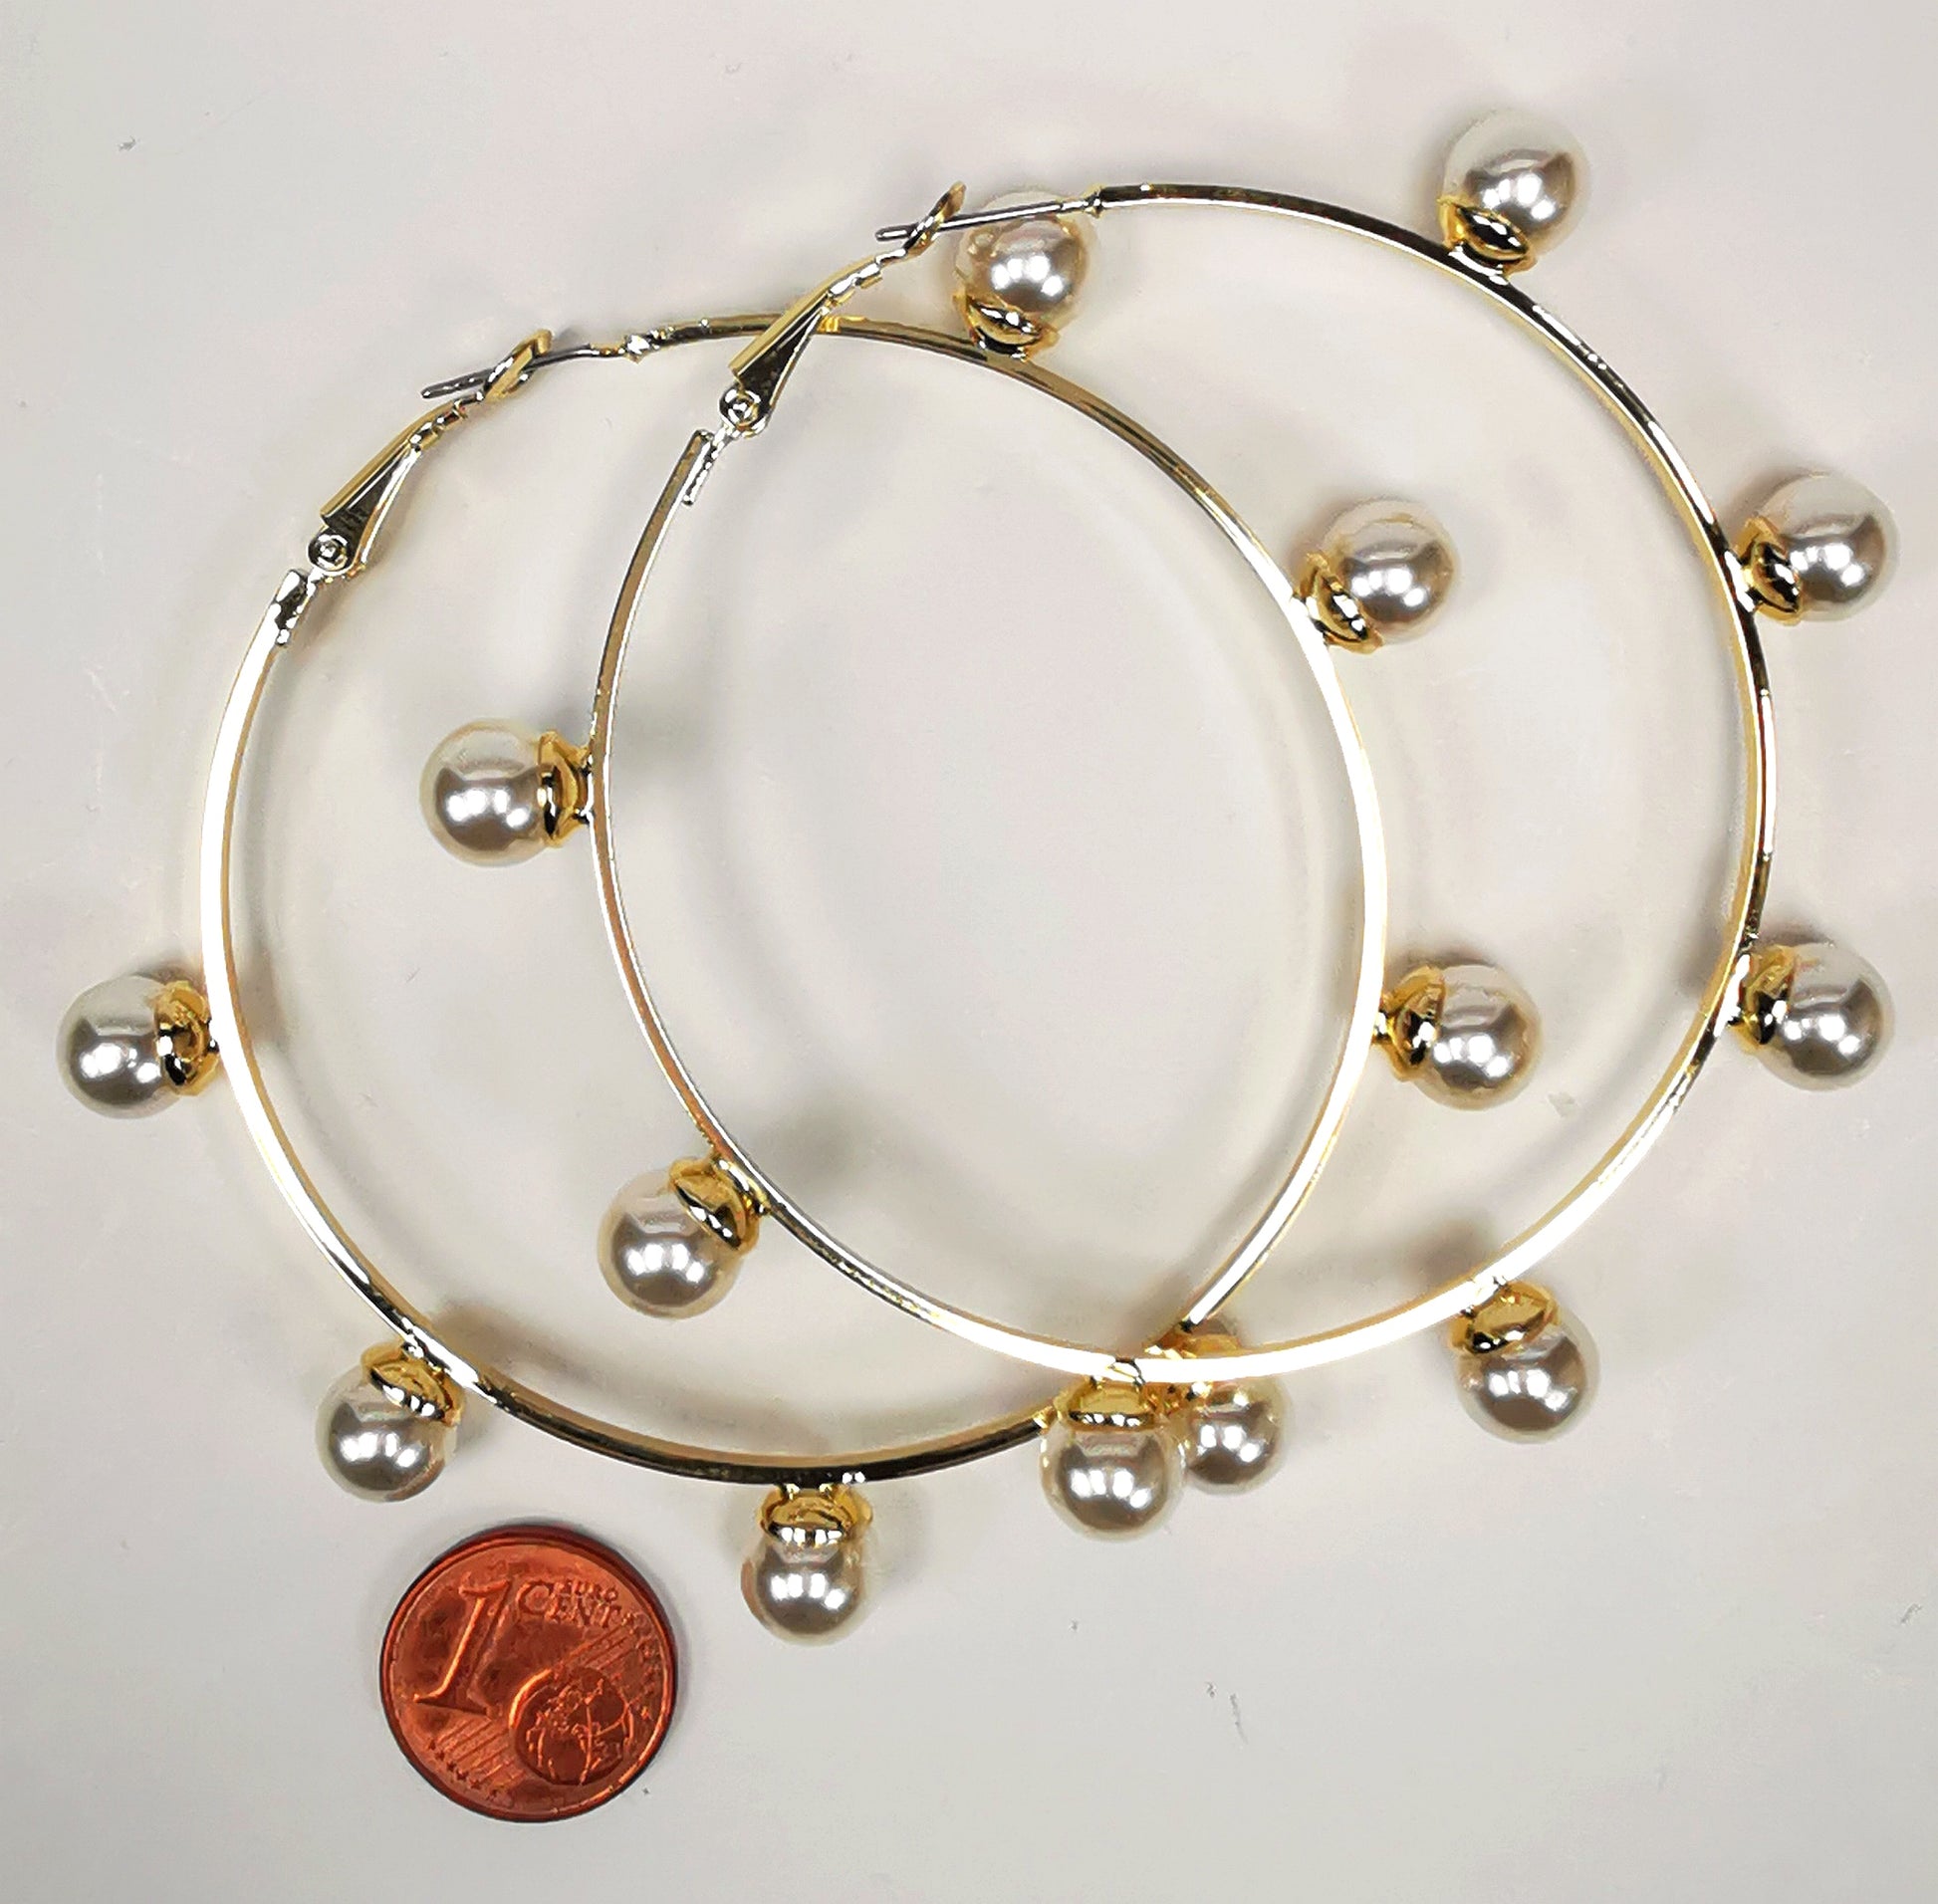 Boucles d'oreilles créoles dorées, diamètre 63mm avec 6 perles fantaisie de 8mm sur l'extérieur. présentées posées sur un fond blanc, l'une sur l'autre, au dessus d'une pièce de 1 centime. Vue de dessus.